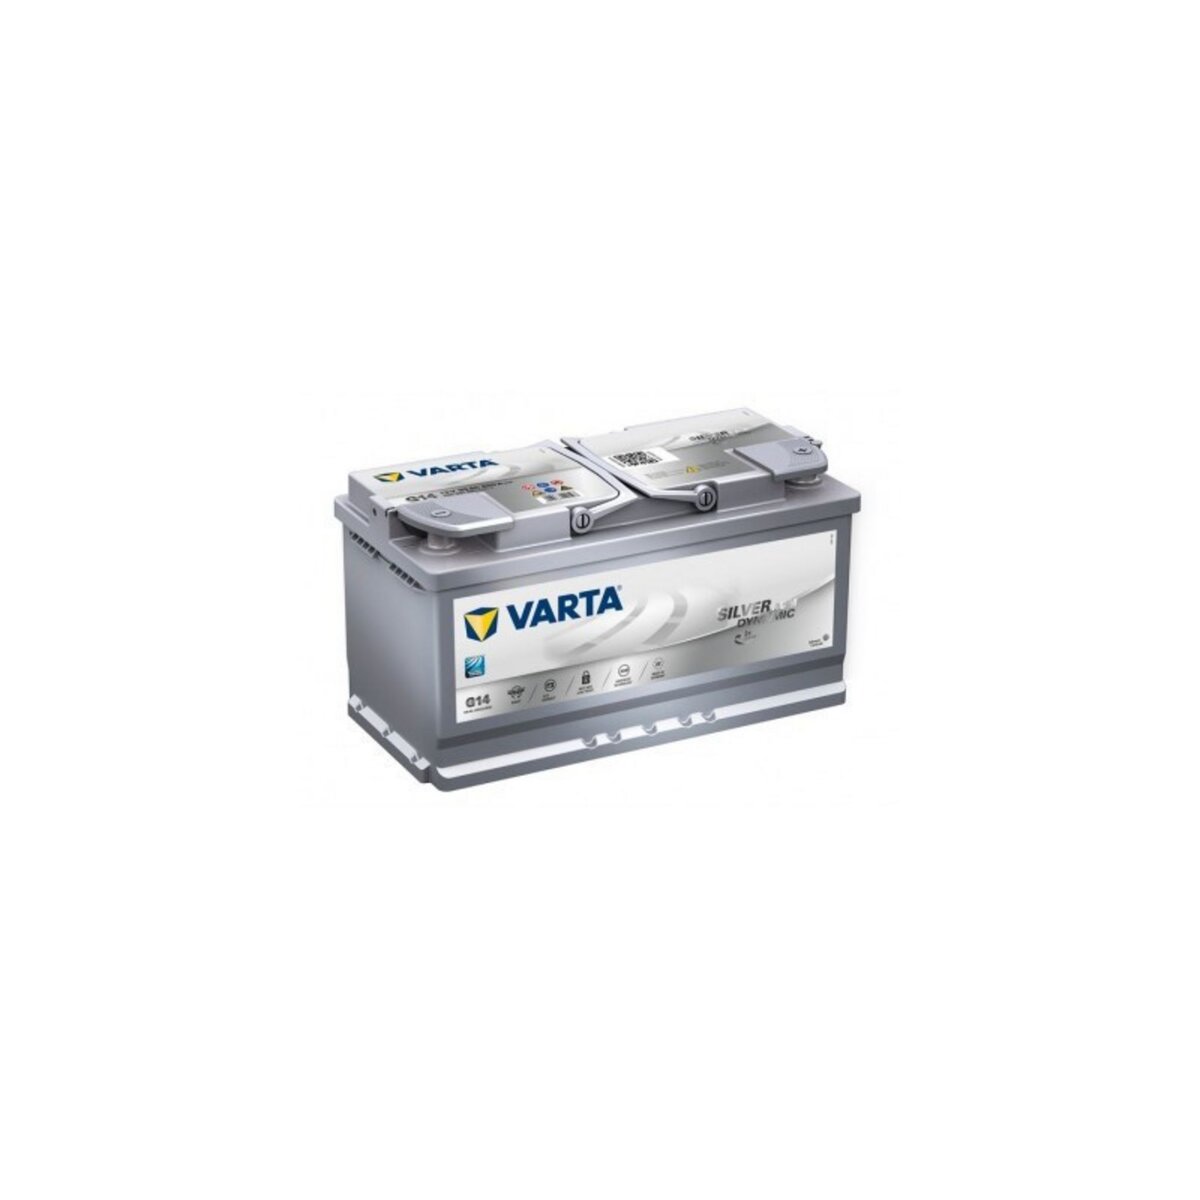 Varta Batterie Varta START-STOP AGM G14 12V 95ah 850A 595 901 085